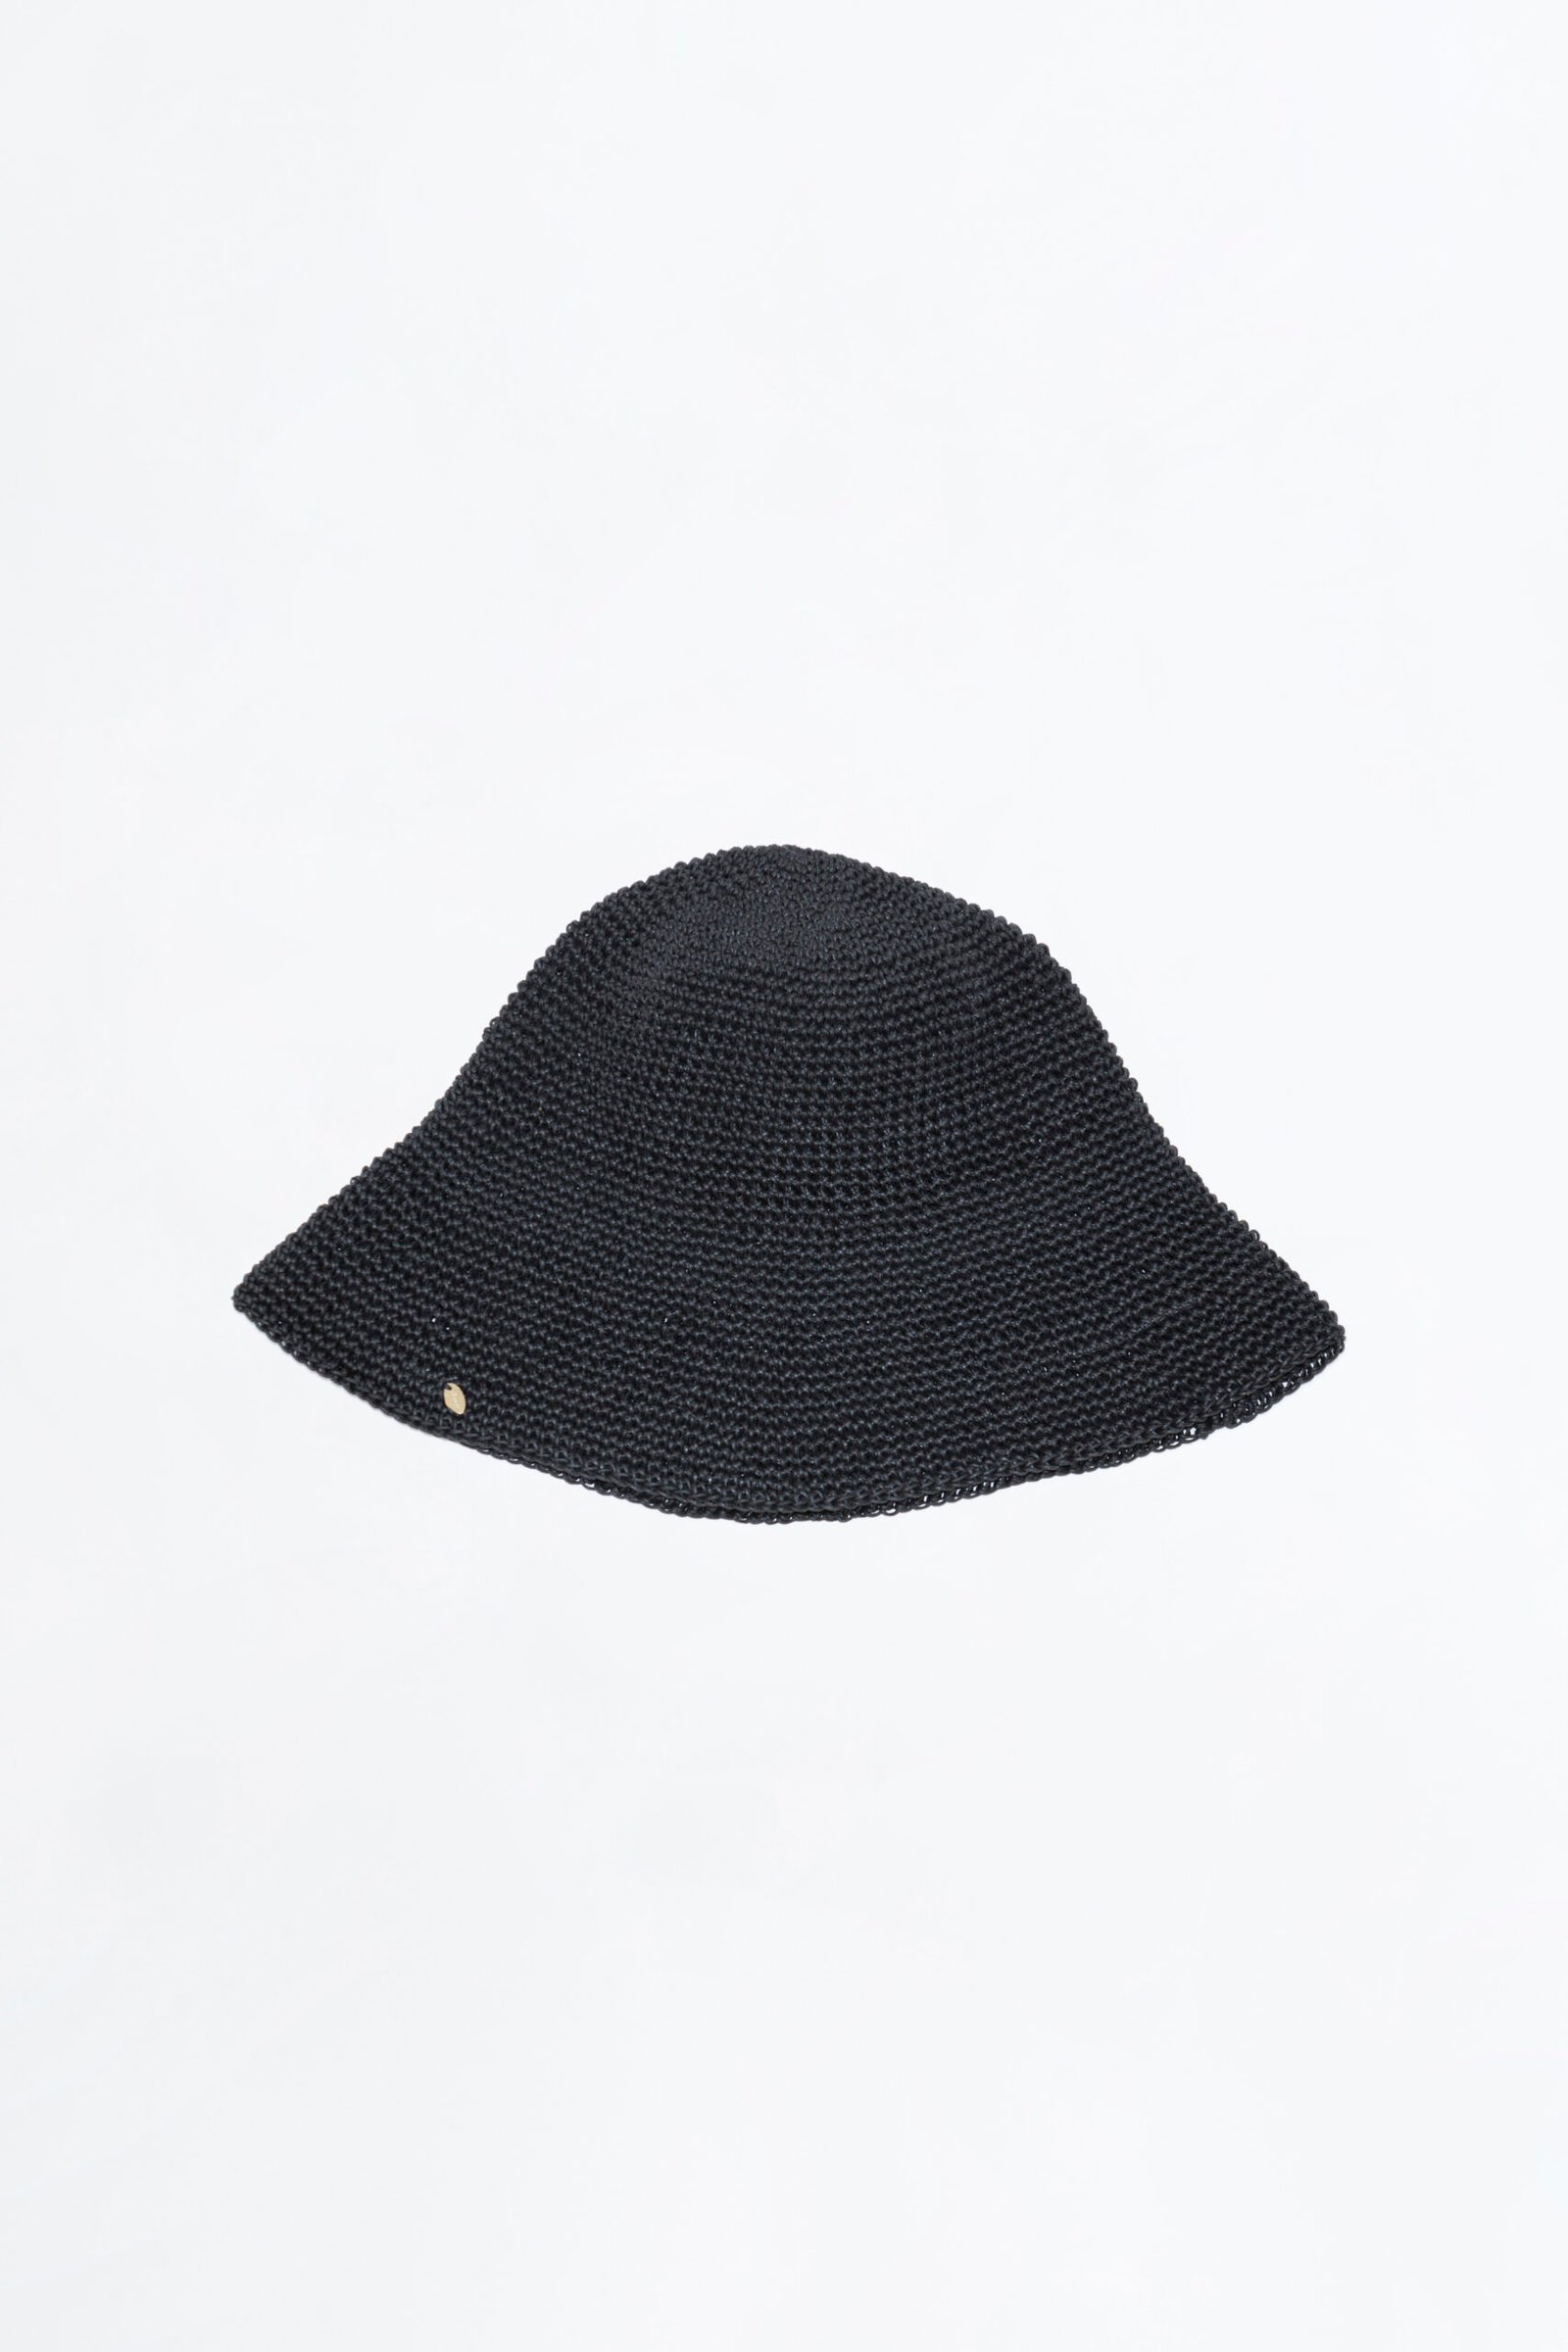 aynie-sombrero-pegual-negro